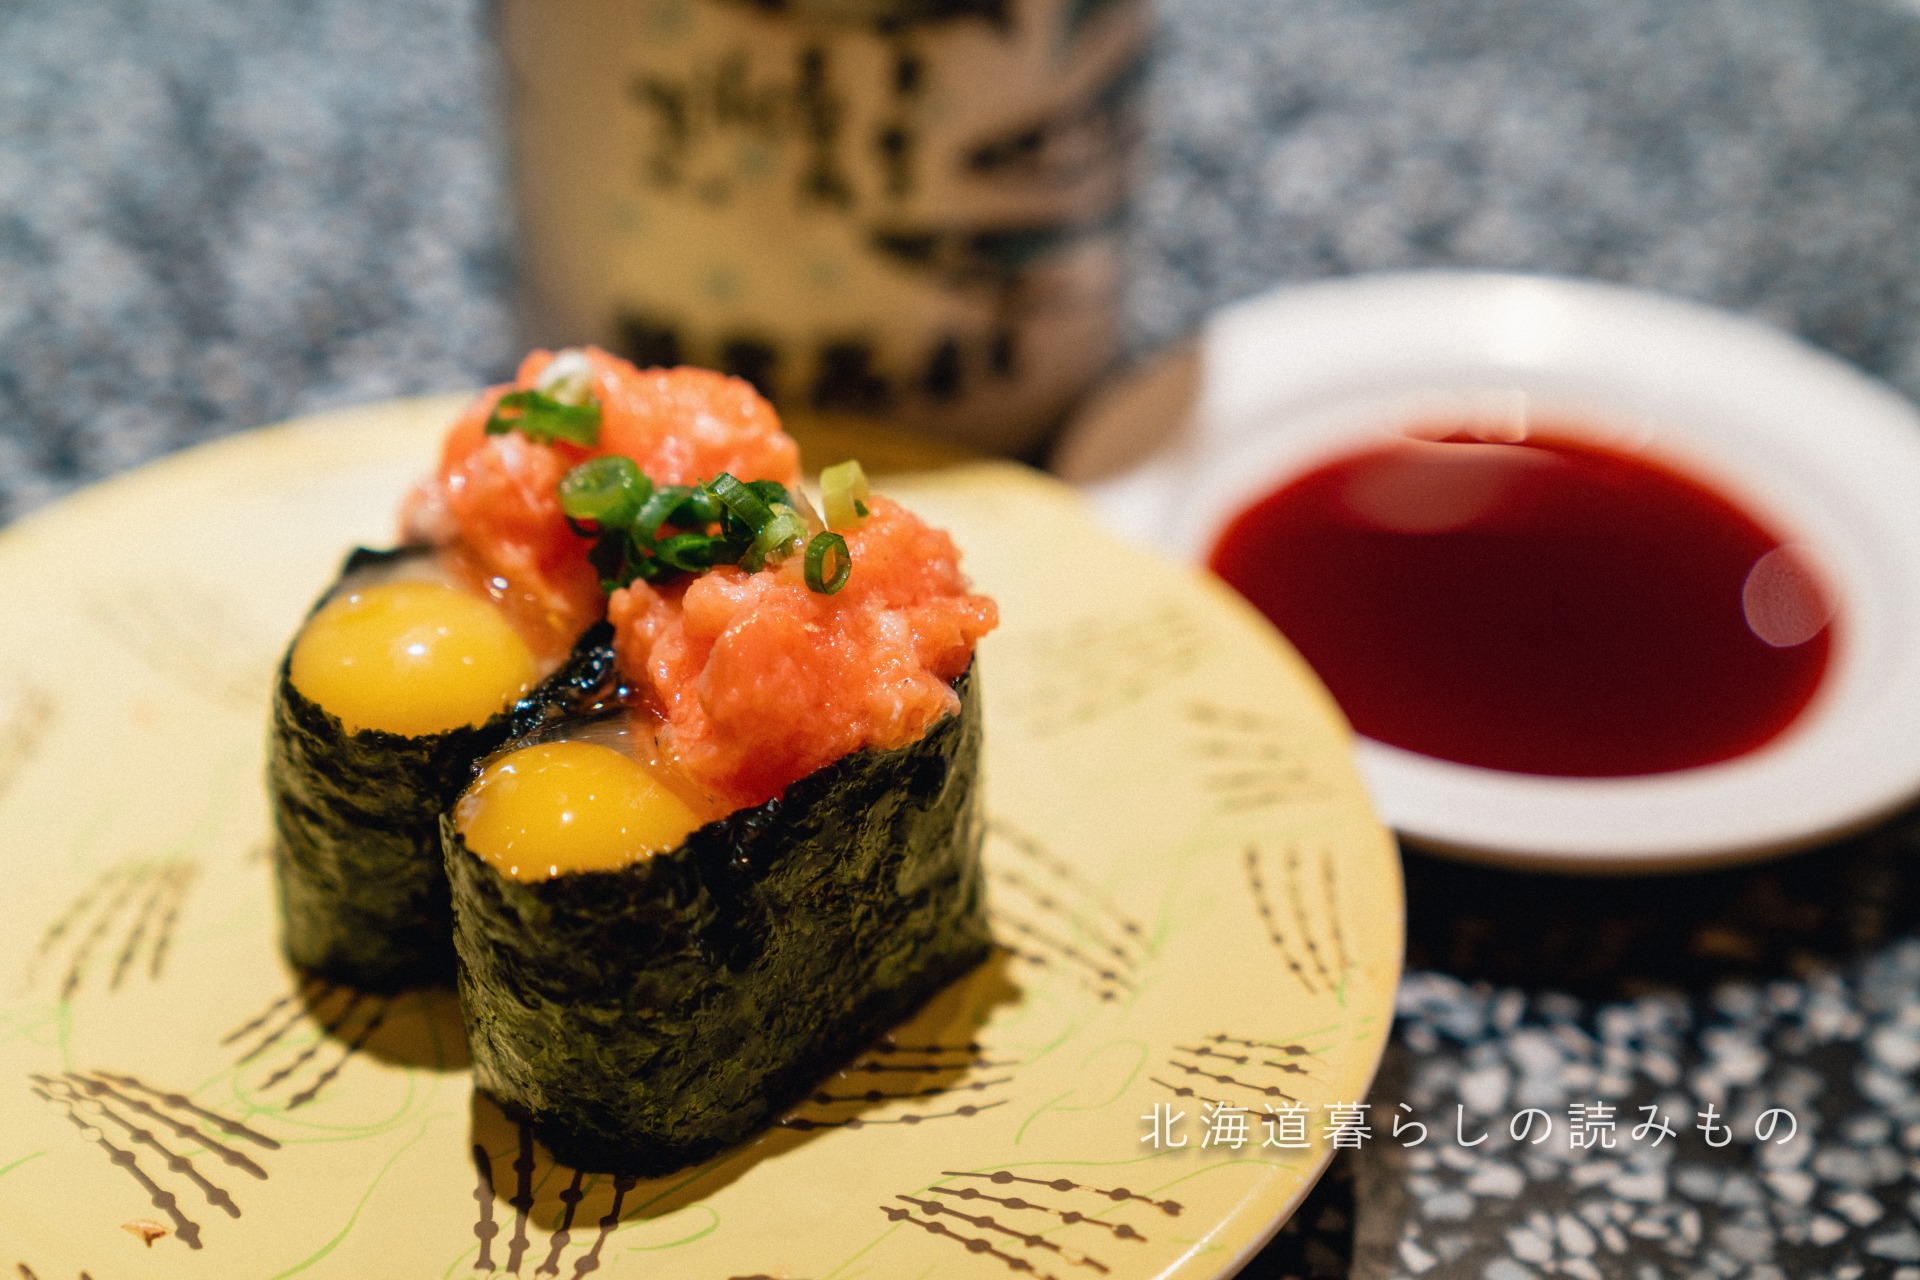 迴轉壽司根室花丸的菜單上的「雞蛋三文魚」